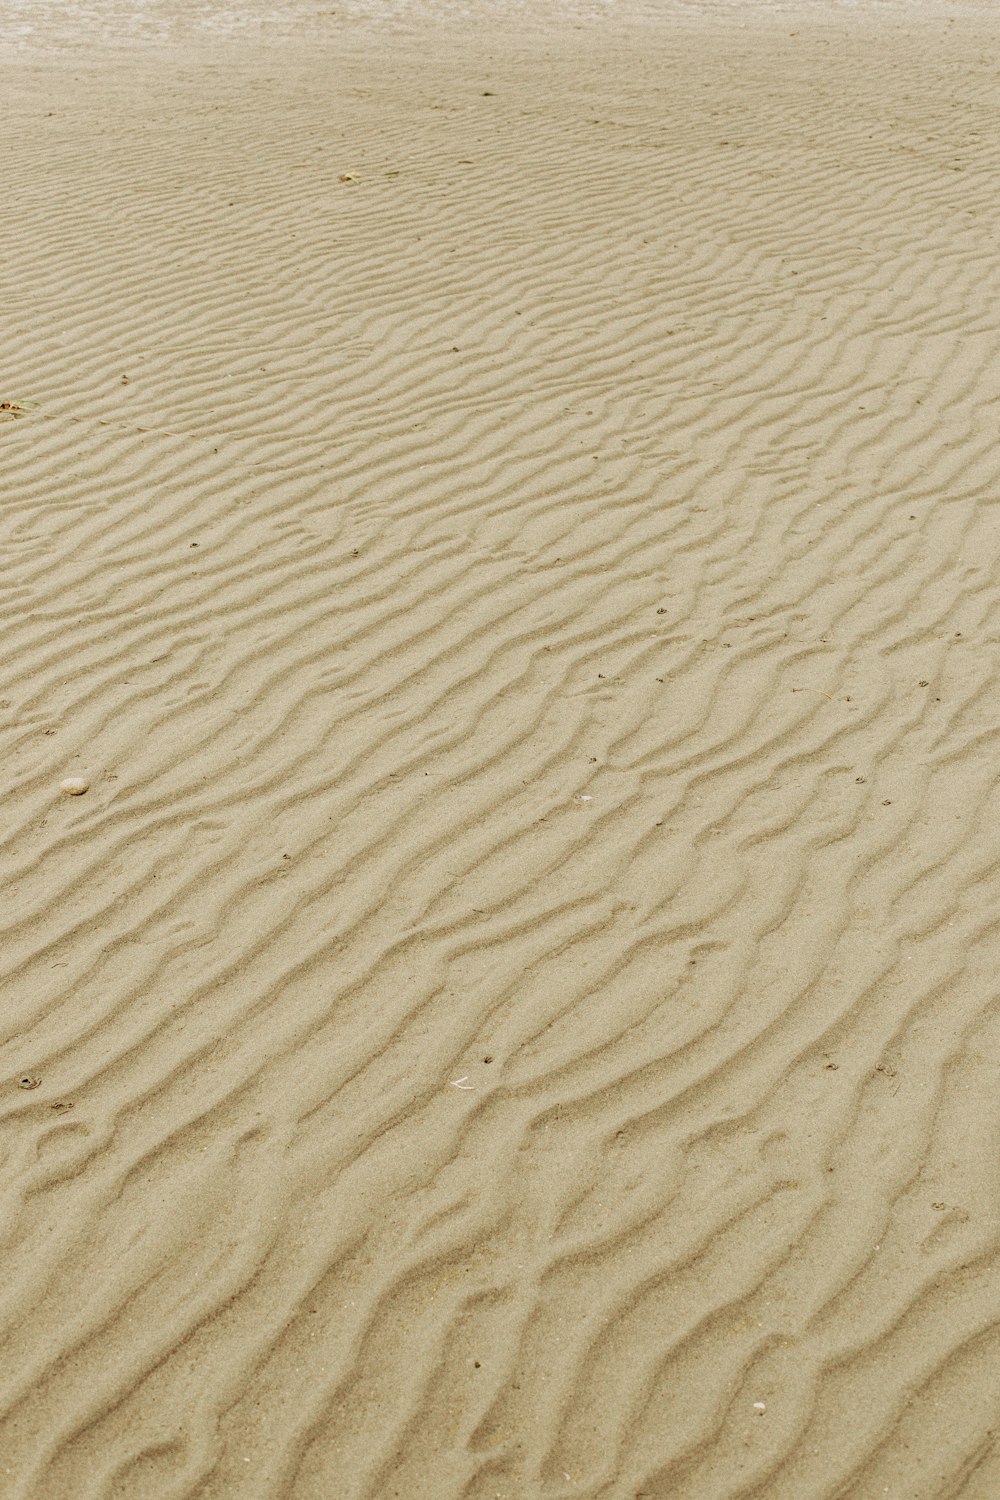 茶色の砂と白い砂